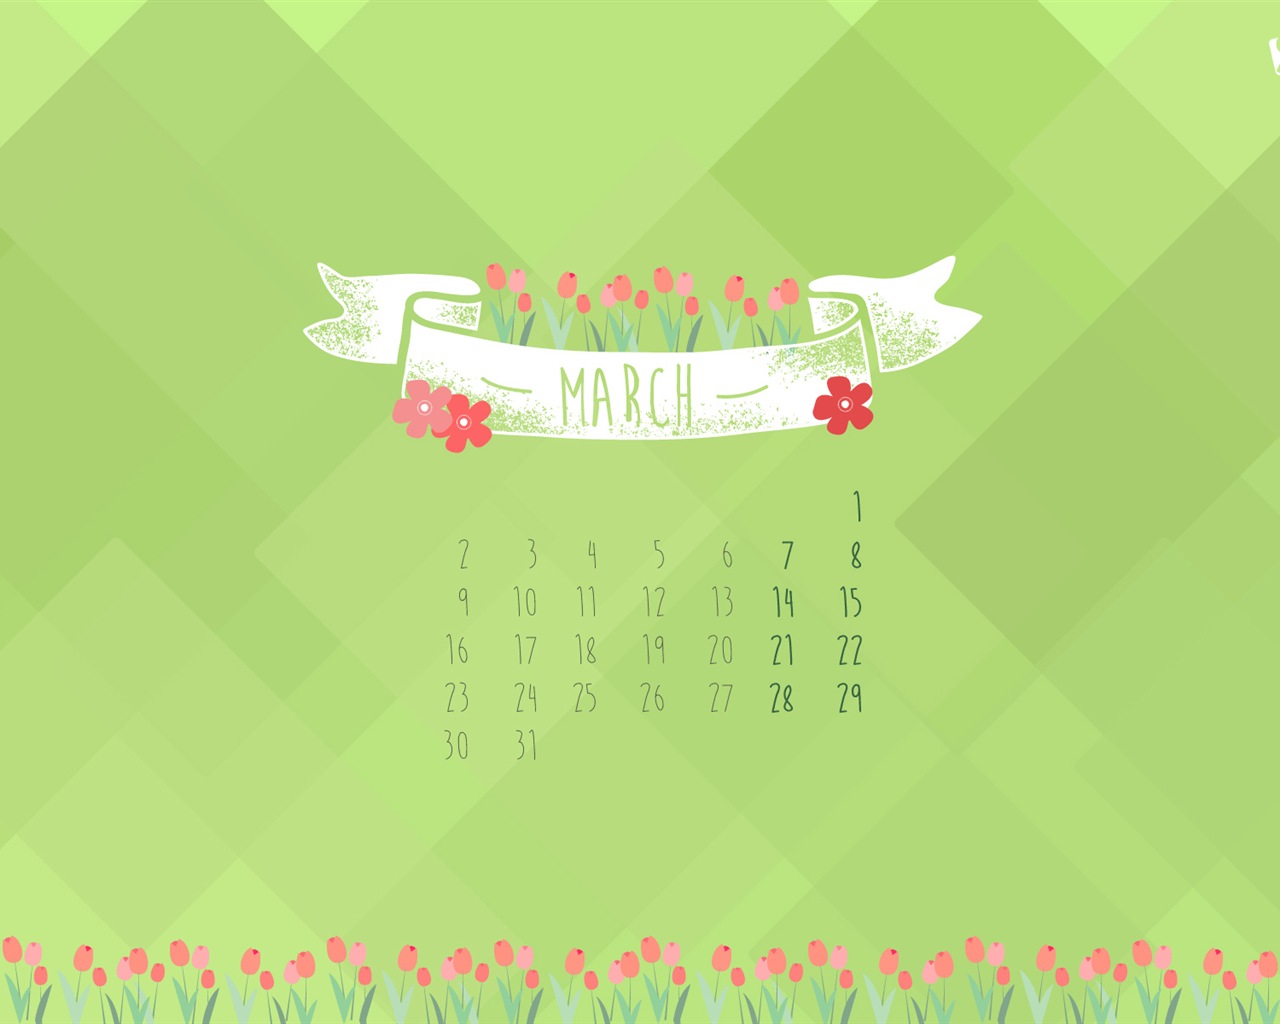 March 2015 Calendar wallpaper (2) #2 - 1280x1024